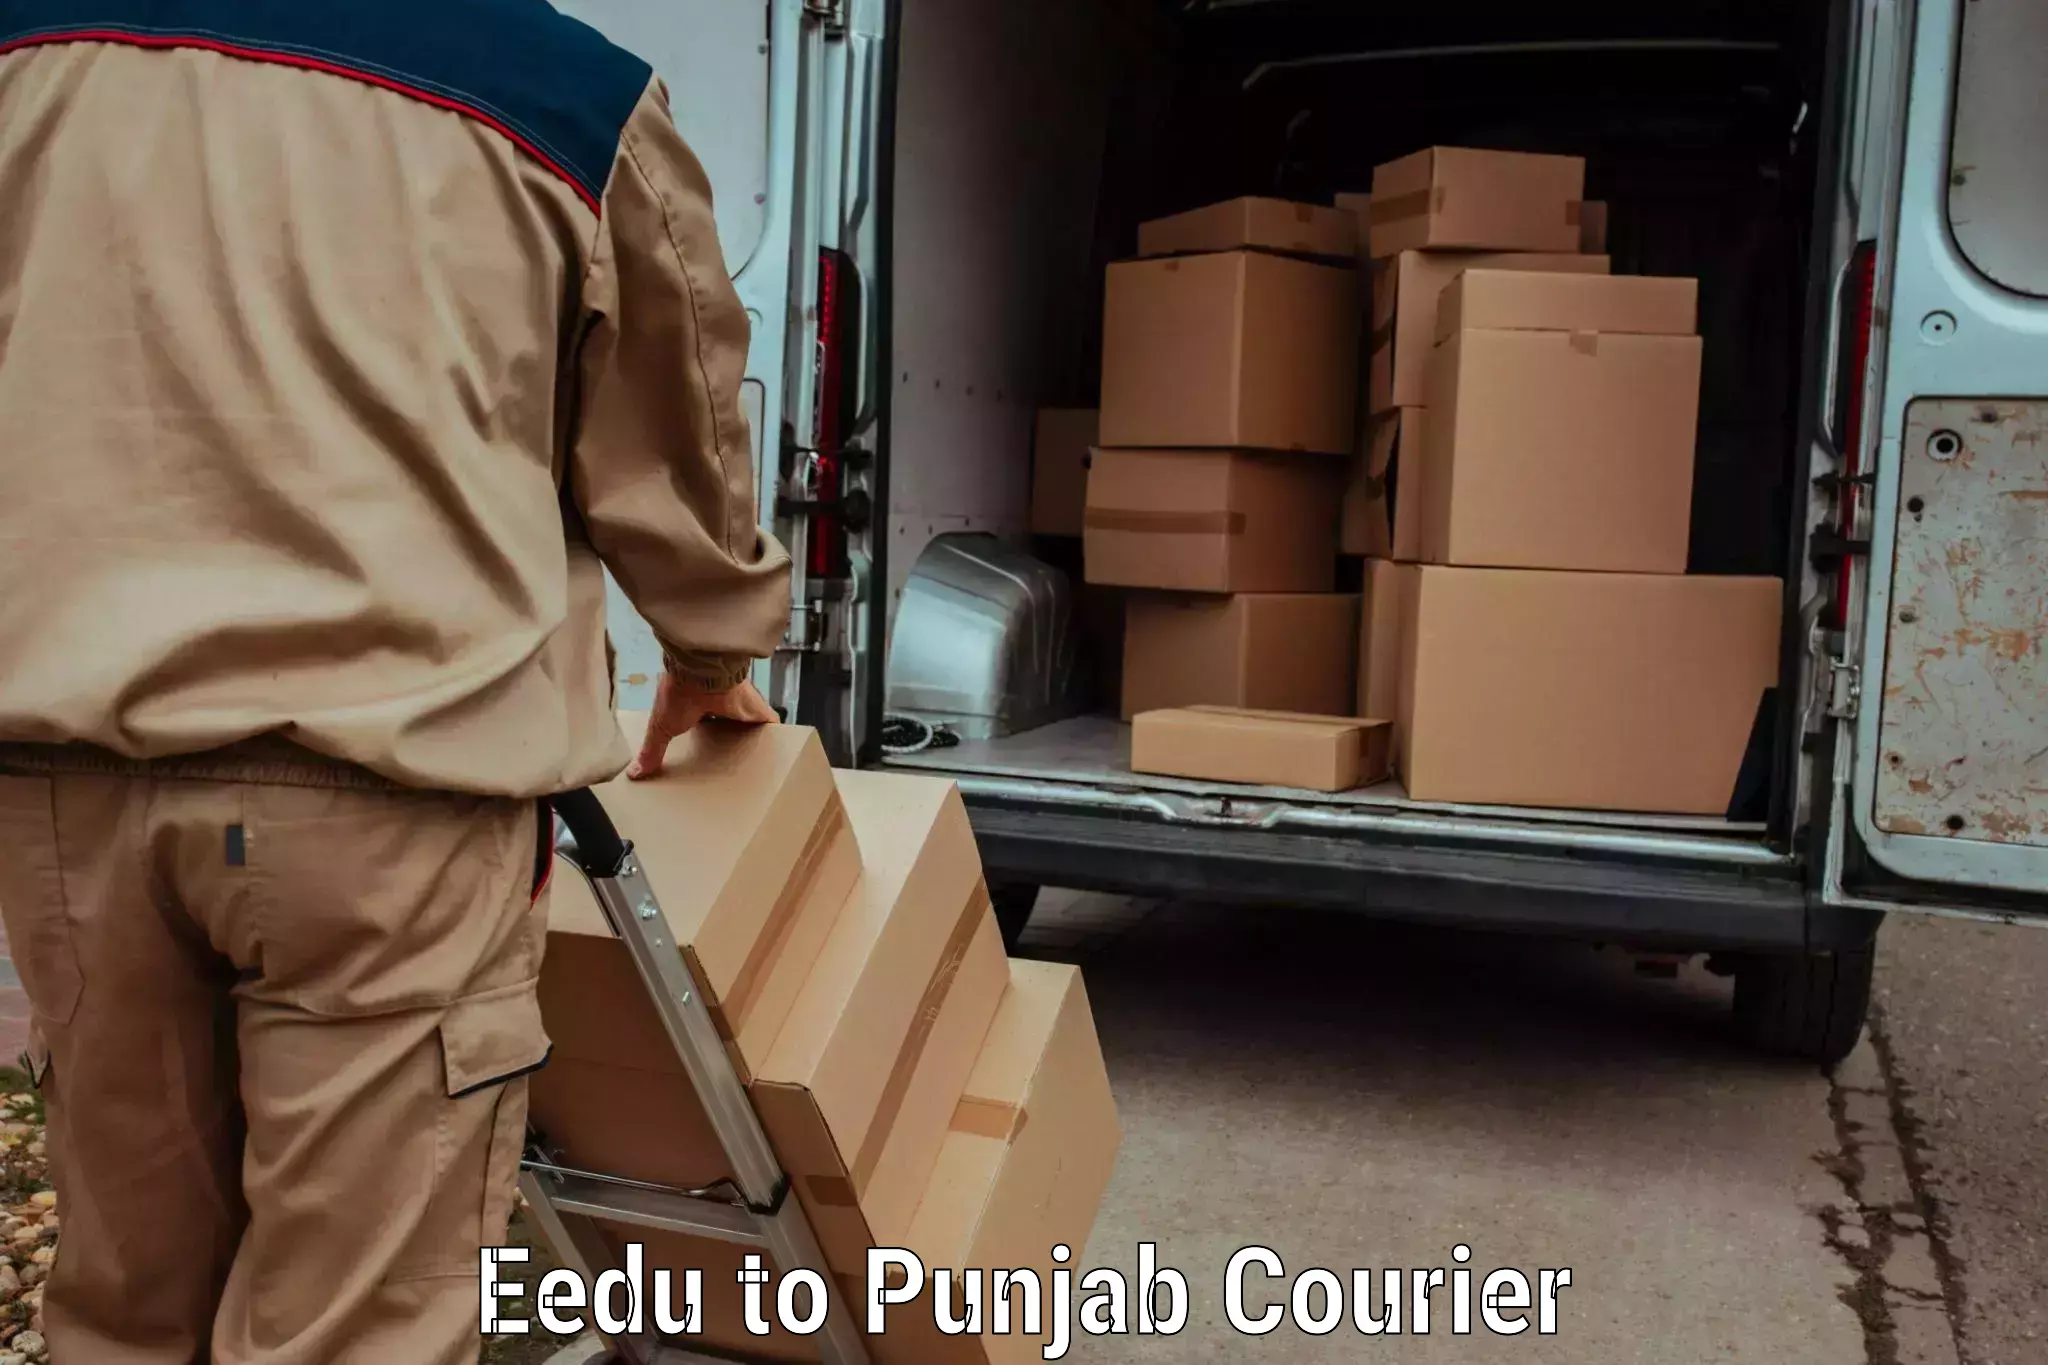 Door-to-door freight service Eedu to Jalalabad